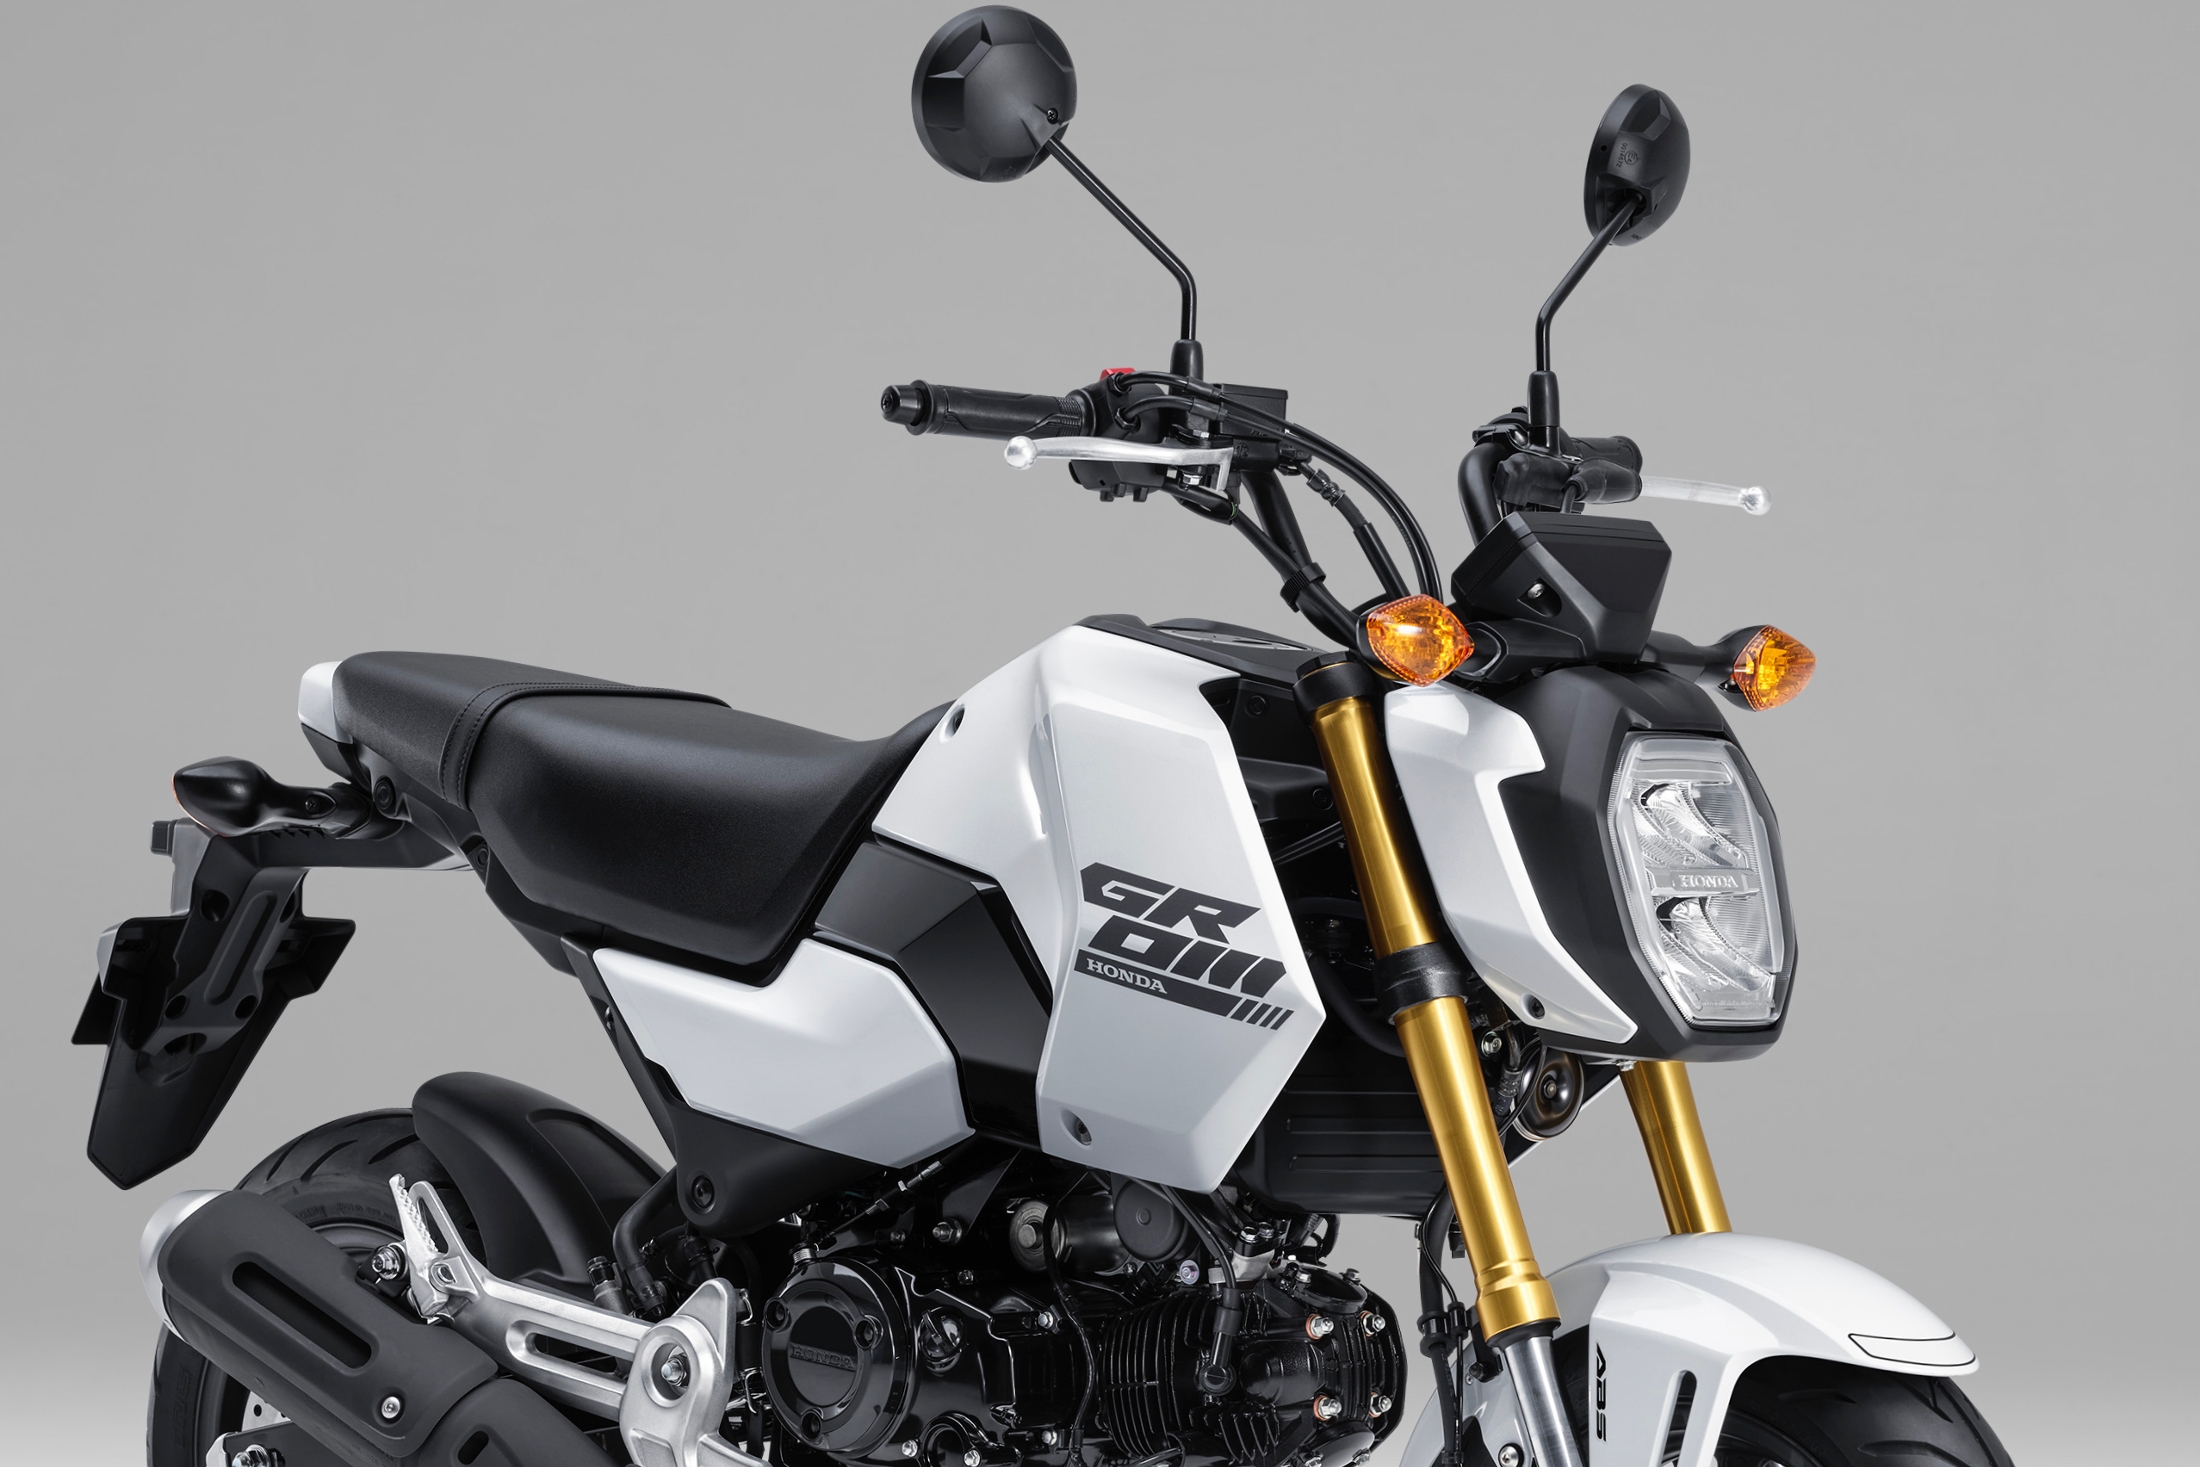 125ccスポーツ「ホンダ グロム」がデザイン変更、39万500円で3月発売 